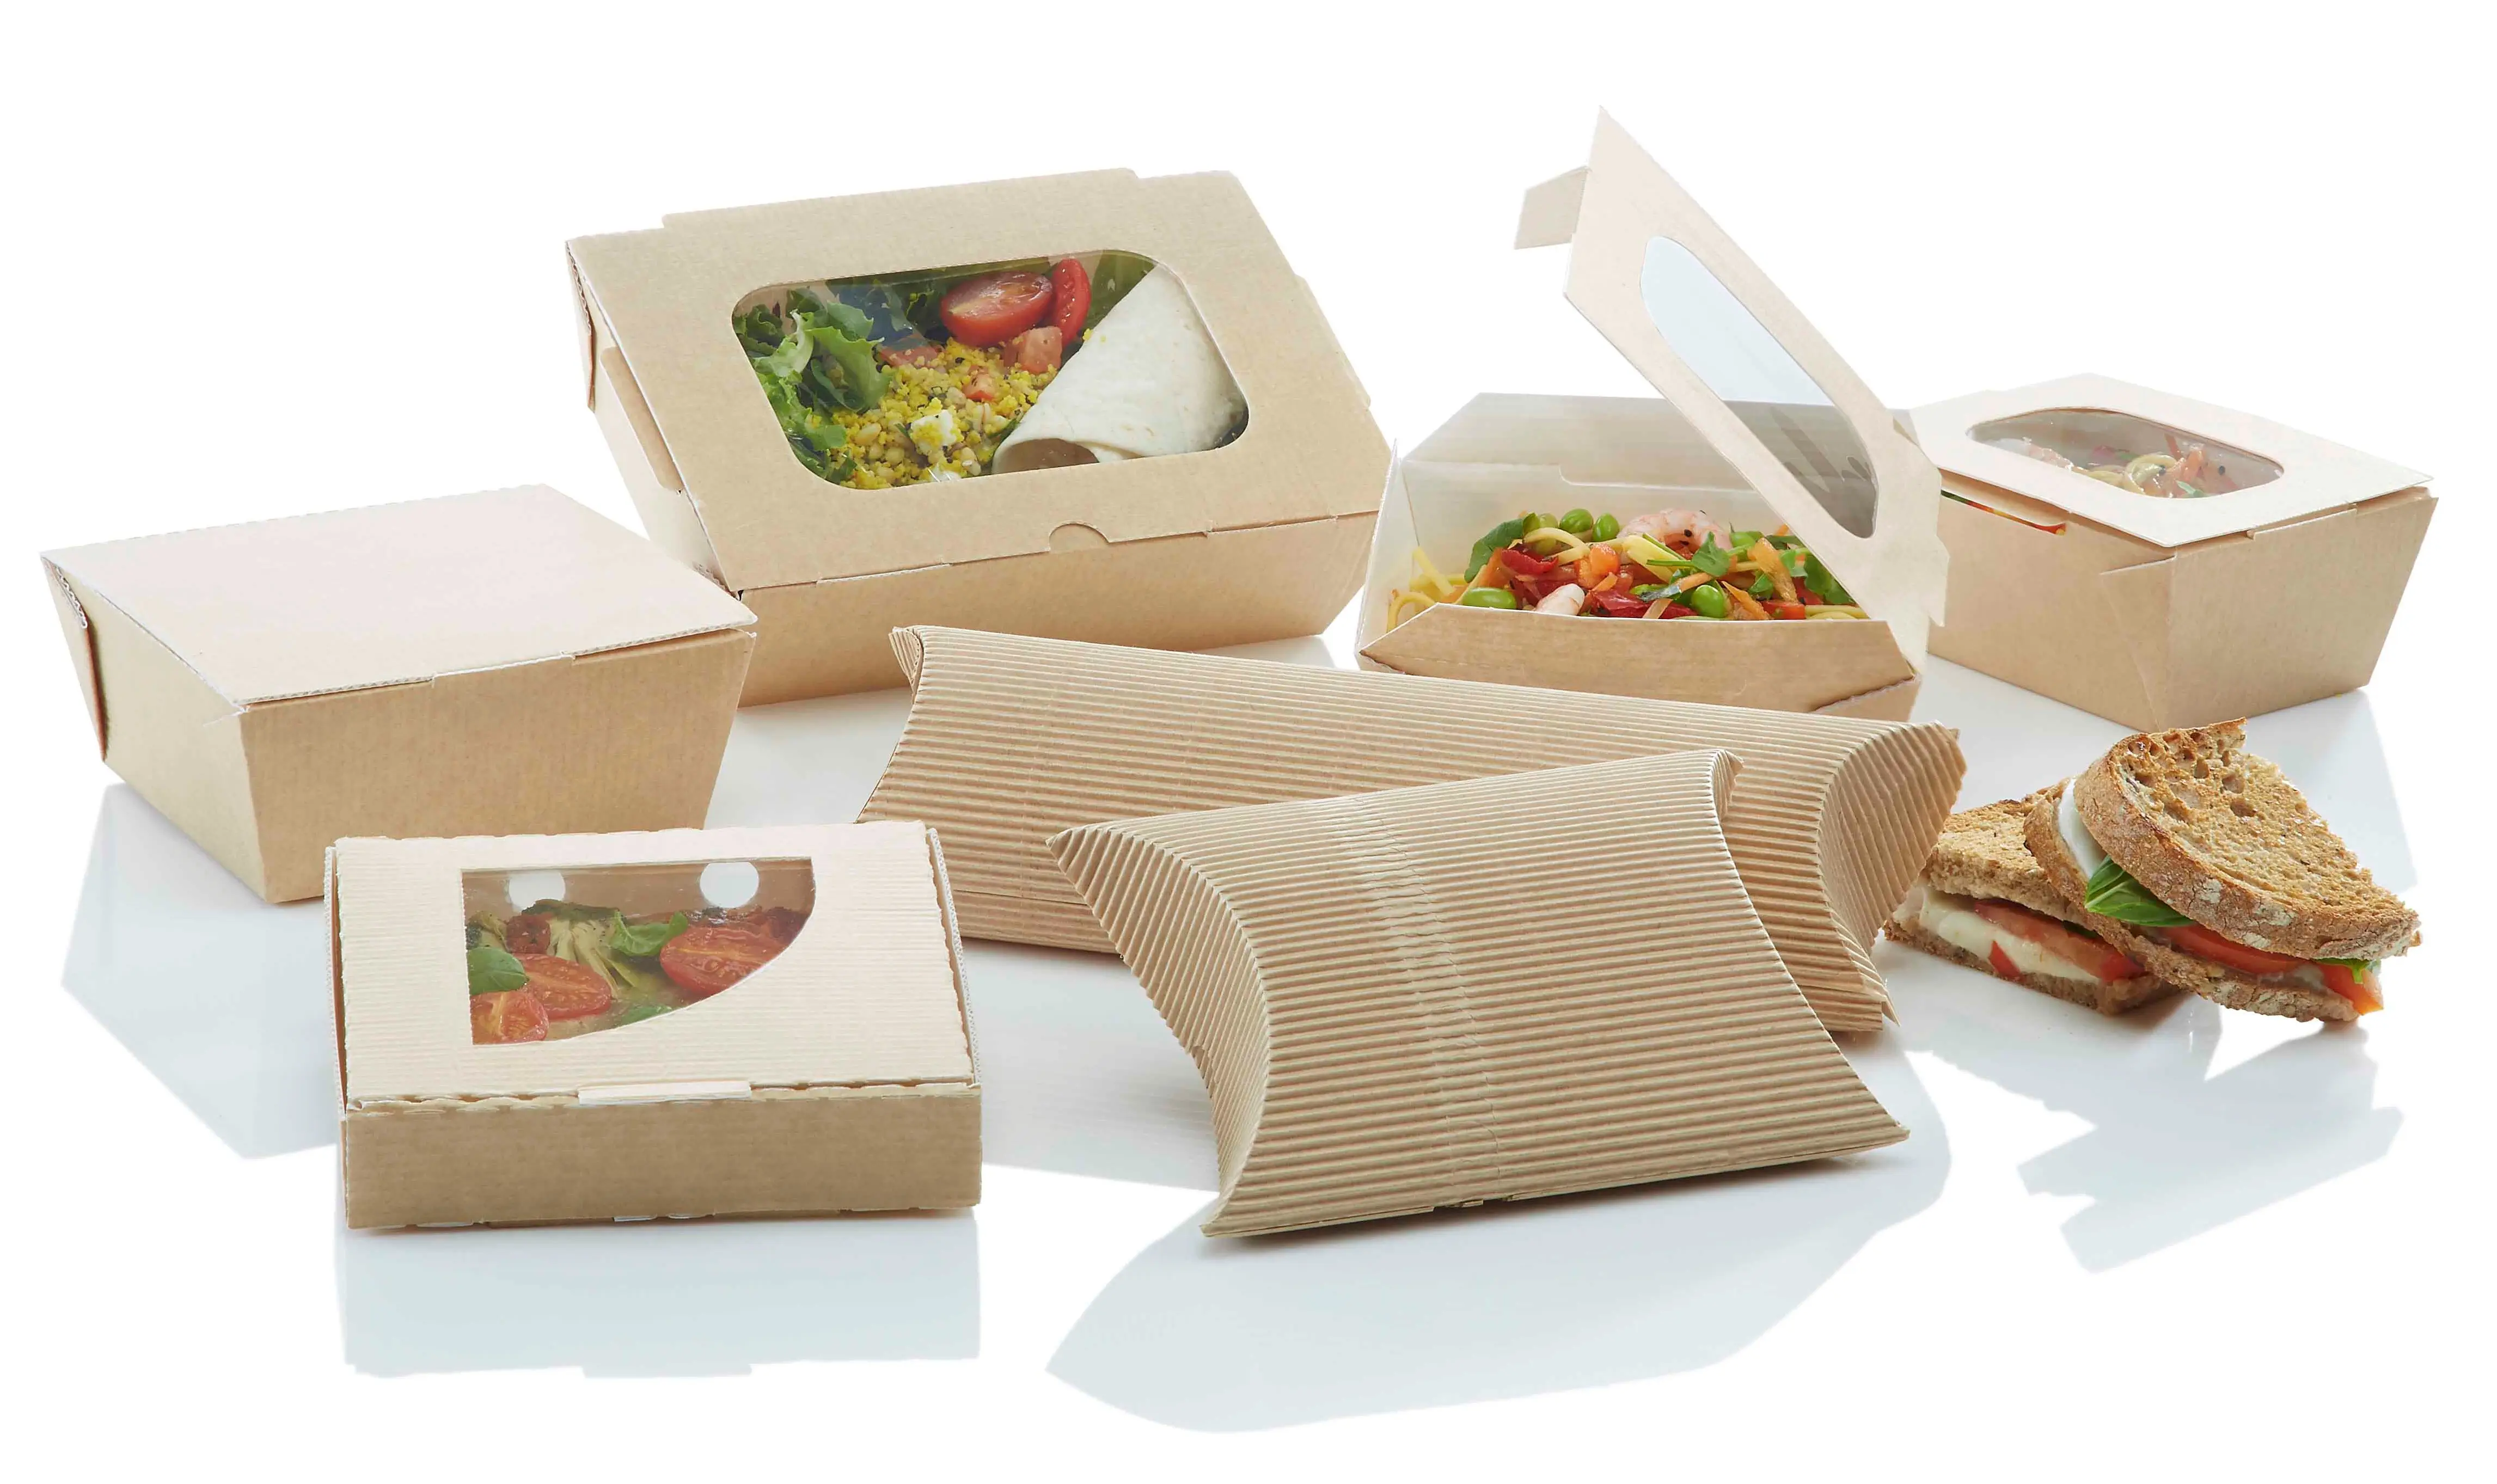 Количество бумажная упаковка. Эко упаковка для пищевых продуктов. Бумажная упаковка для еды. Упаковка для фаст фуда. Еда в упаковке.